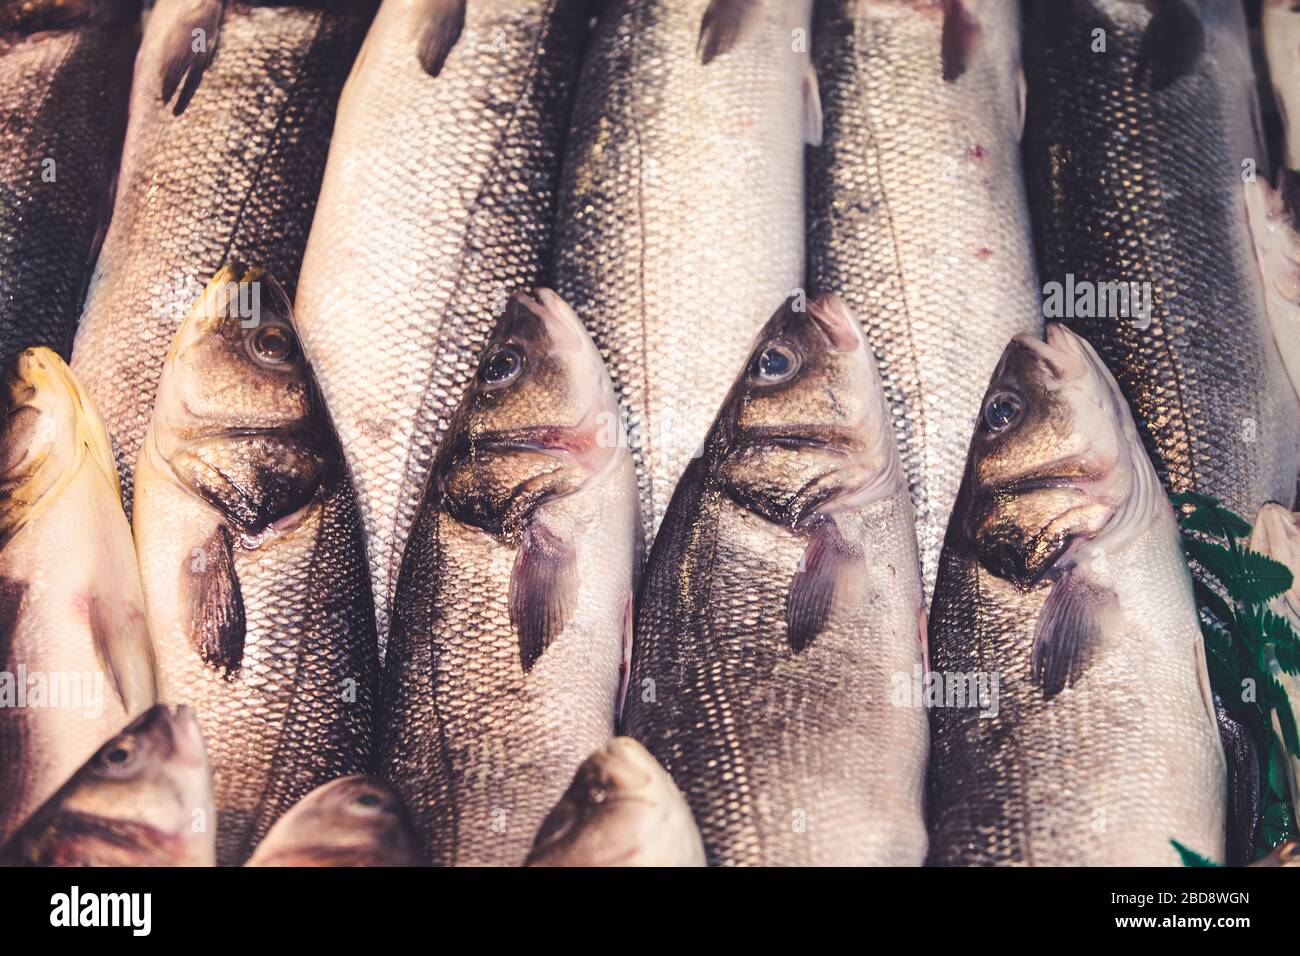 Frischer Fisch aus dem Mittelmeer, der auf einem Markt in Málaga, Spanien, verkauft werden kann. Spanische authentische Gastronomie Kultur. Stockfoto